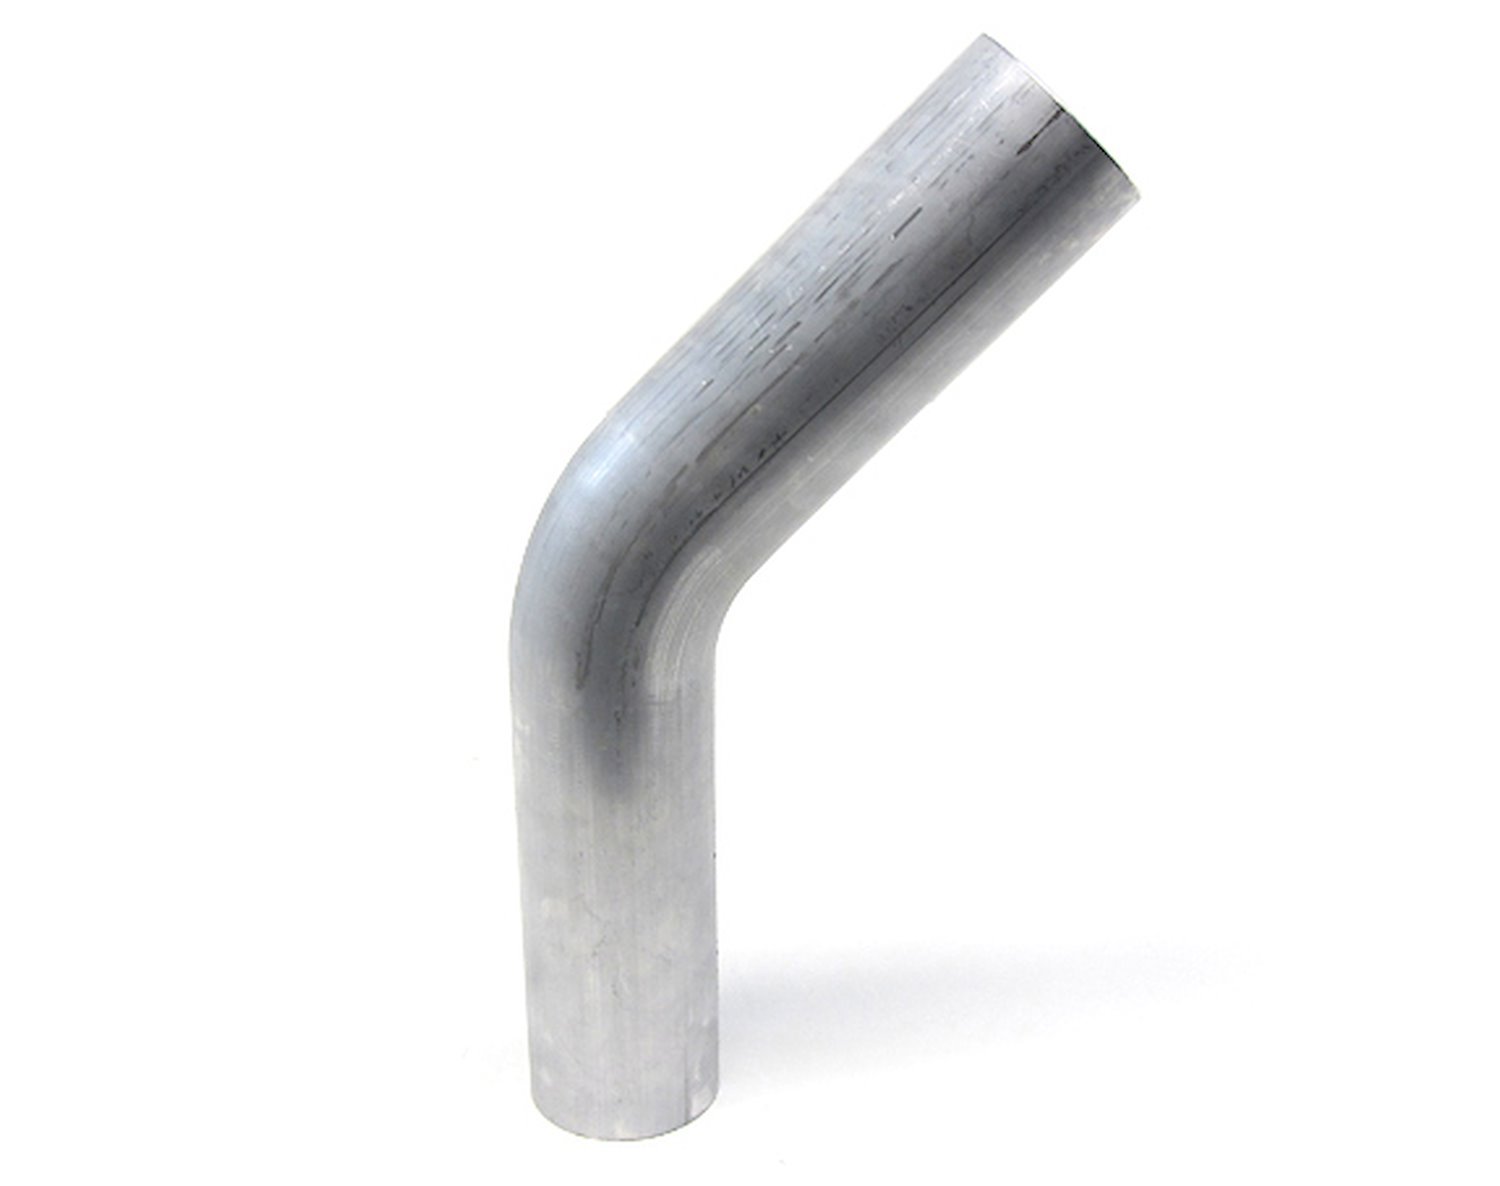 AT45-250-CLR-25 Aluminum Elbow Tube, 6061 Aluminum, 45-Degree Bend Elbow Tubing, 2-1/2 in. OD, Tight Radius, 2-1/2 in. CLR